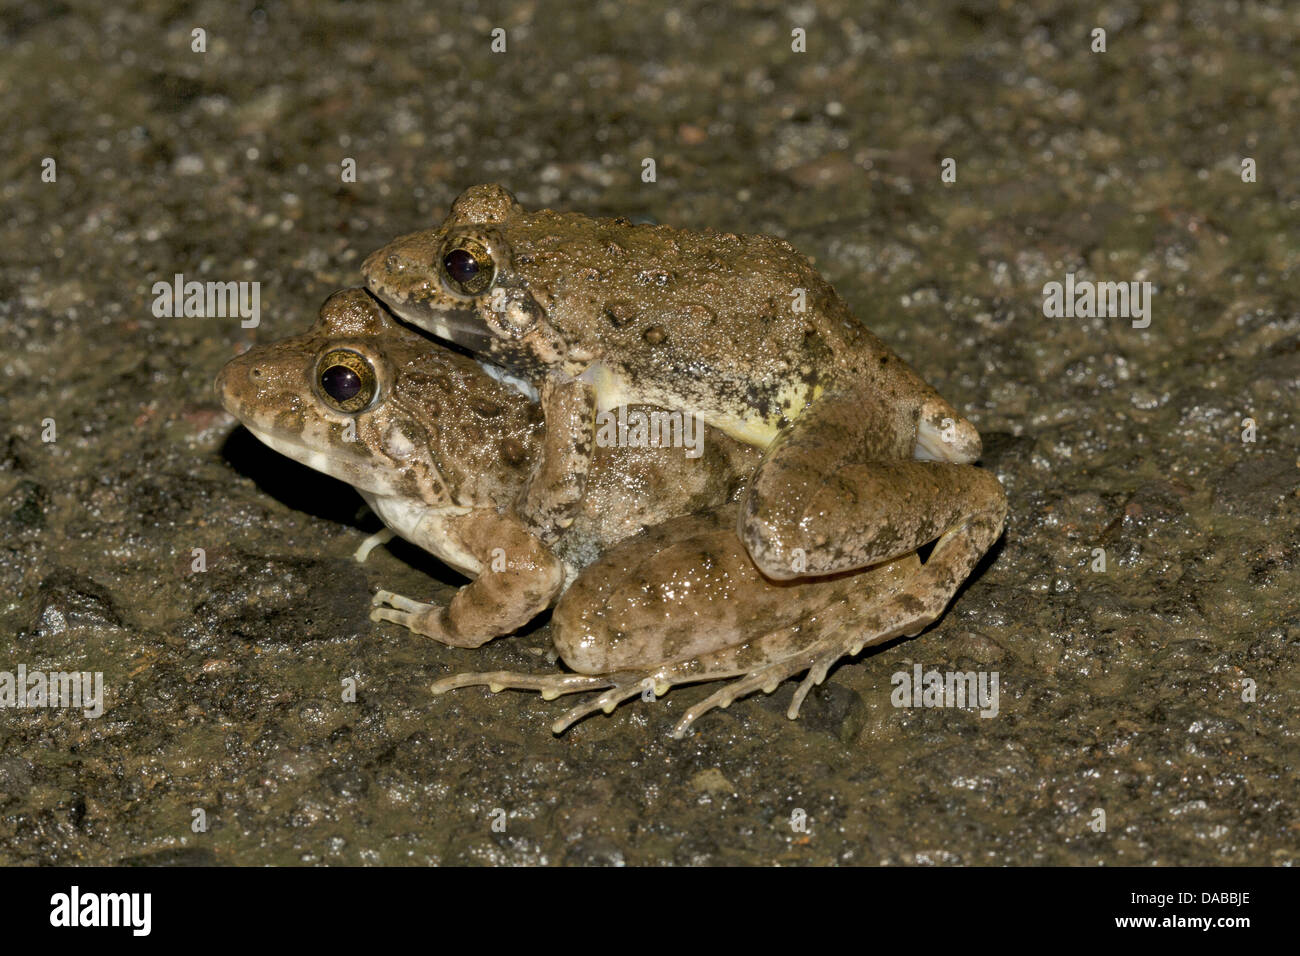 Name: Cricket frogs mating Location: Aarey Milk Colony, Maharashtra Stock Photo